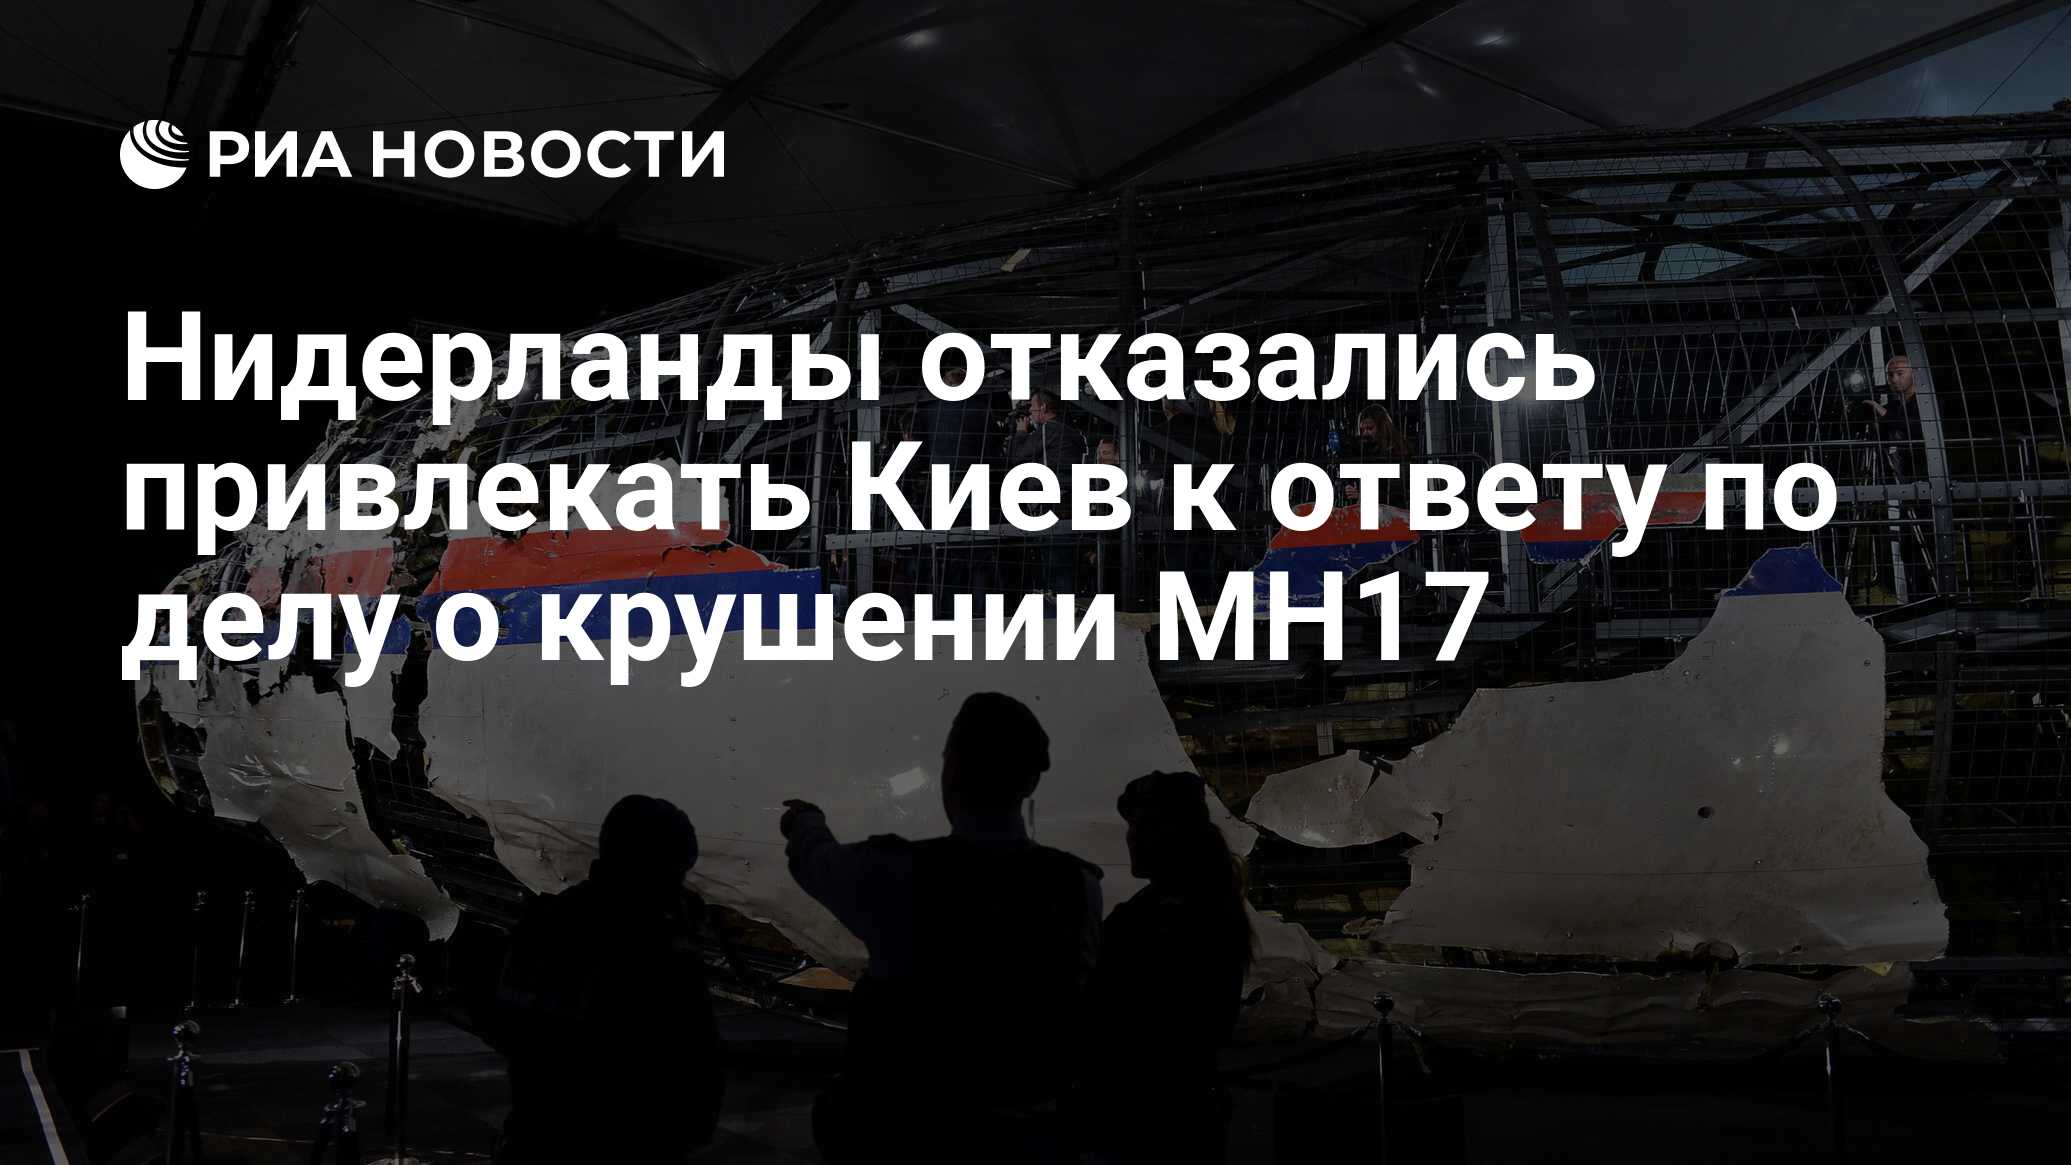 Картинки по запросу "Нидерланды отказались привлекать к ответу Киев по делу о крушении MH17"